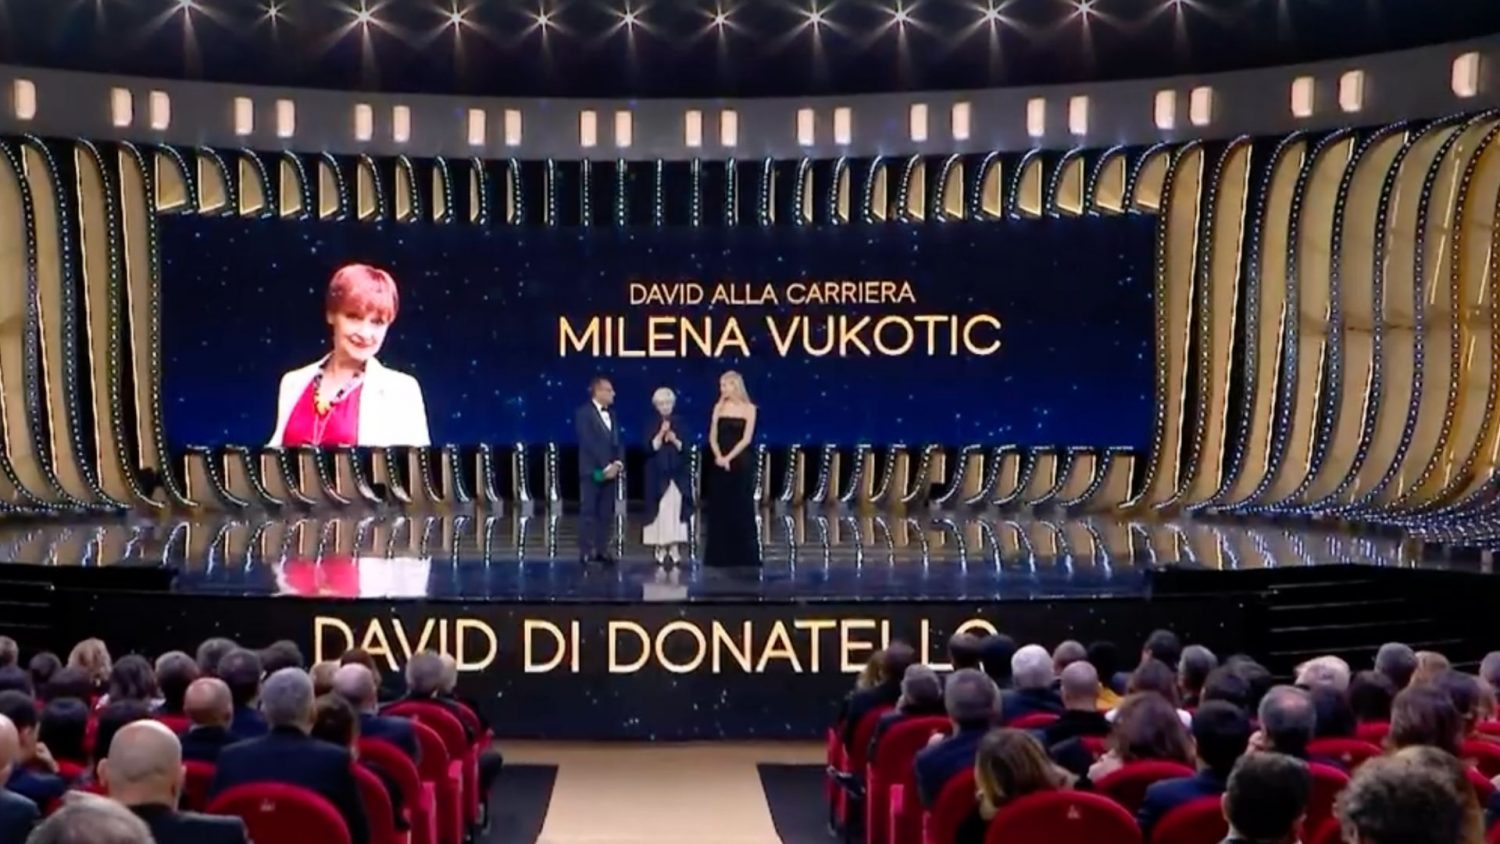 Milena Vukotic: “Penso a Fellini e al Teatro 5 che ha reso immortale il cinema italiano”